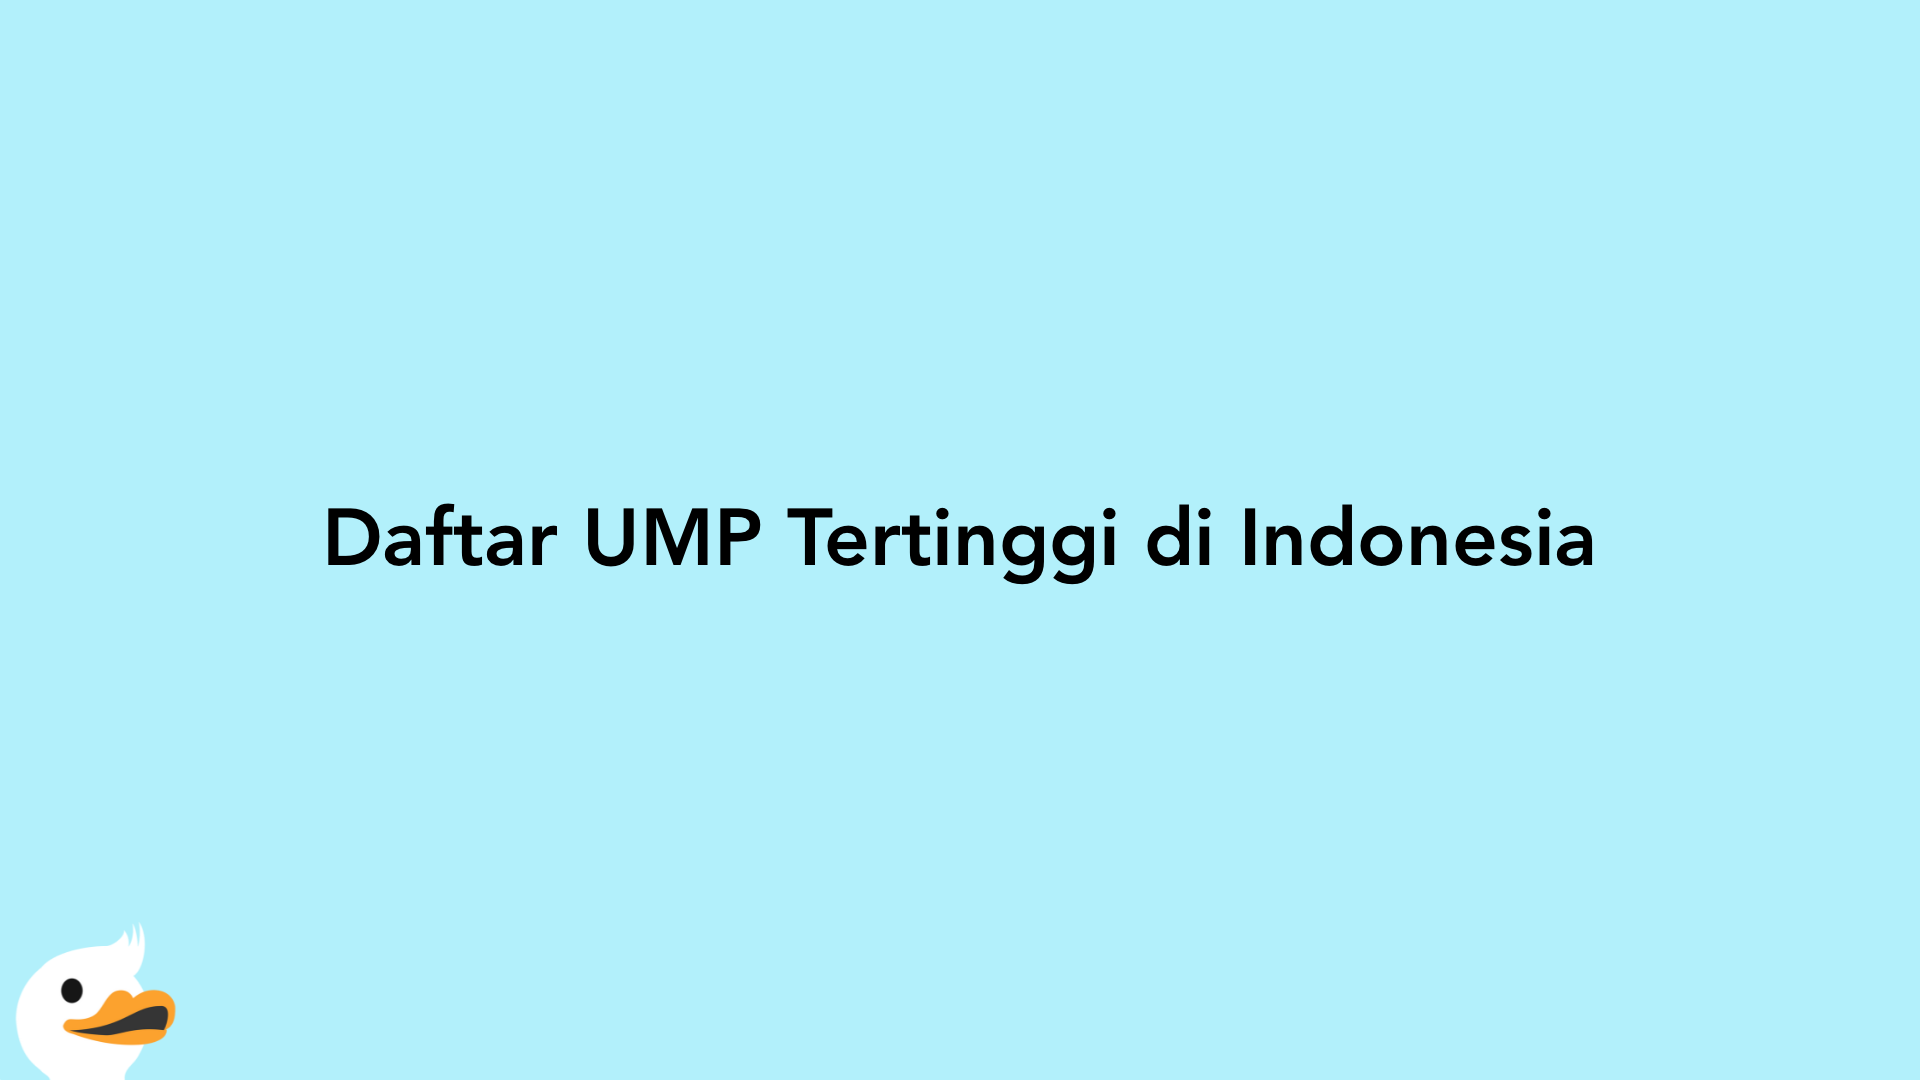 Daftar UMP Tertinggi di Indonesia